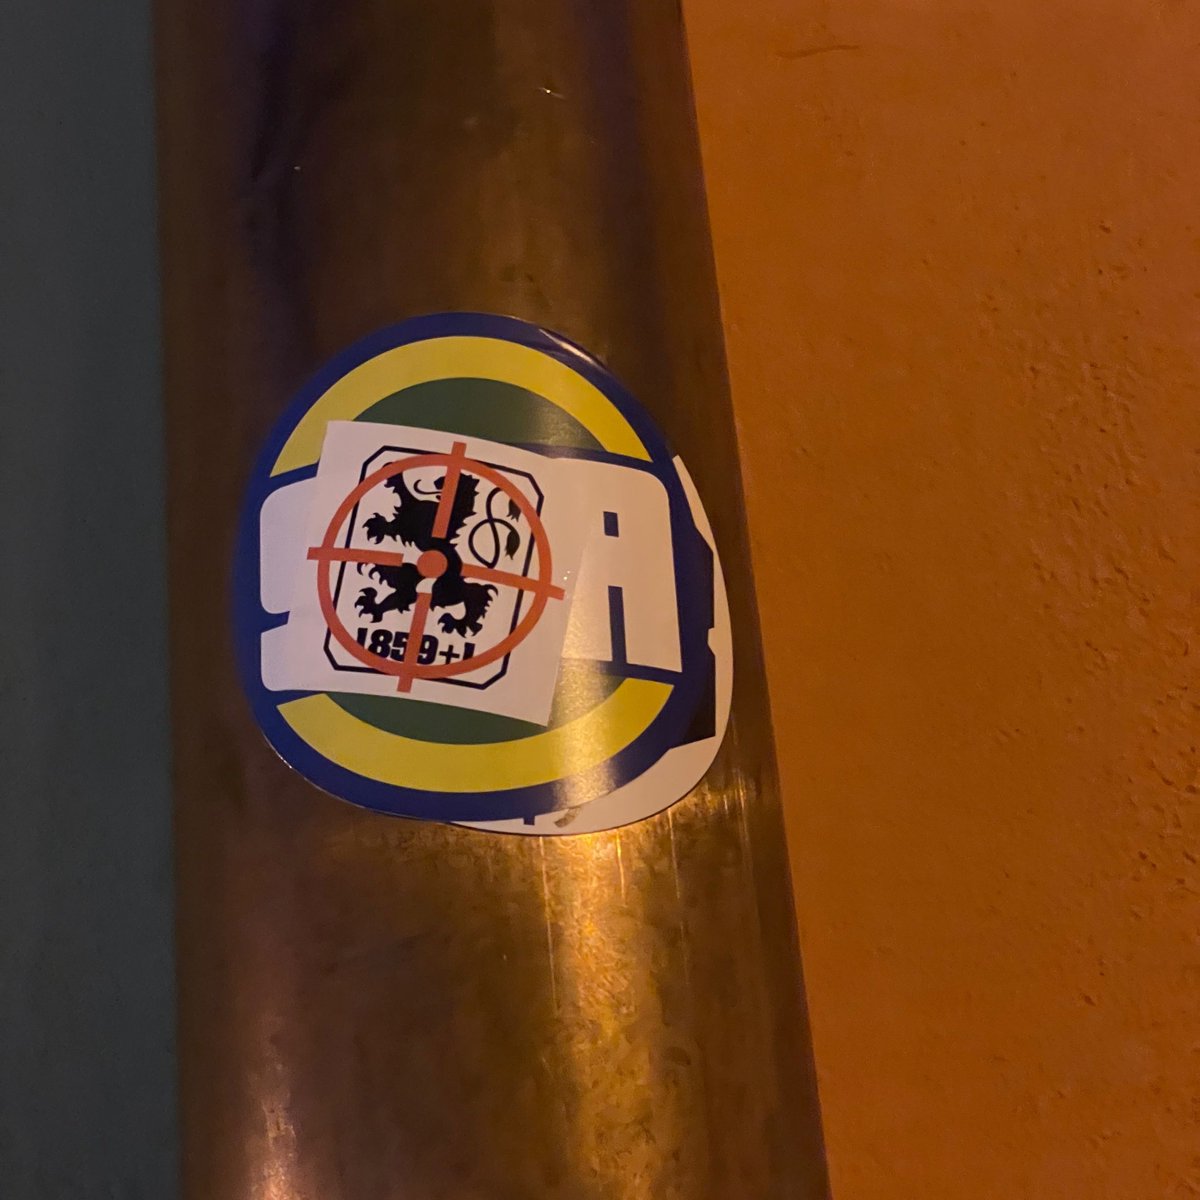 A little bit about Munich 
#ultrasstickers #footballstickers #footballculture #Ultras #StickerHunting